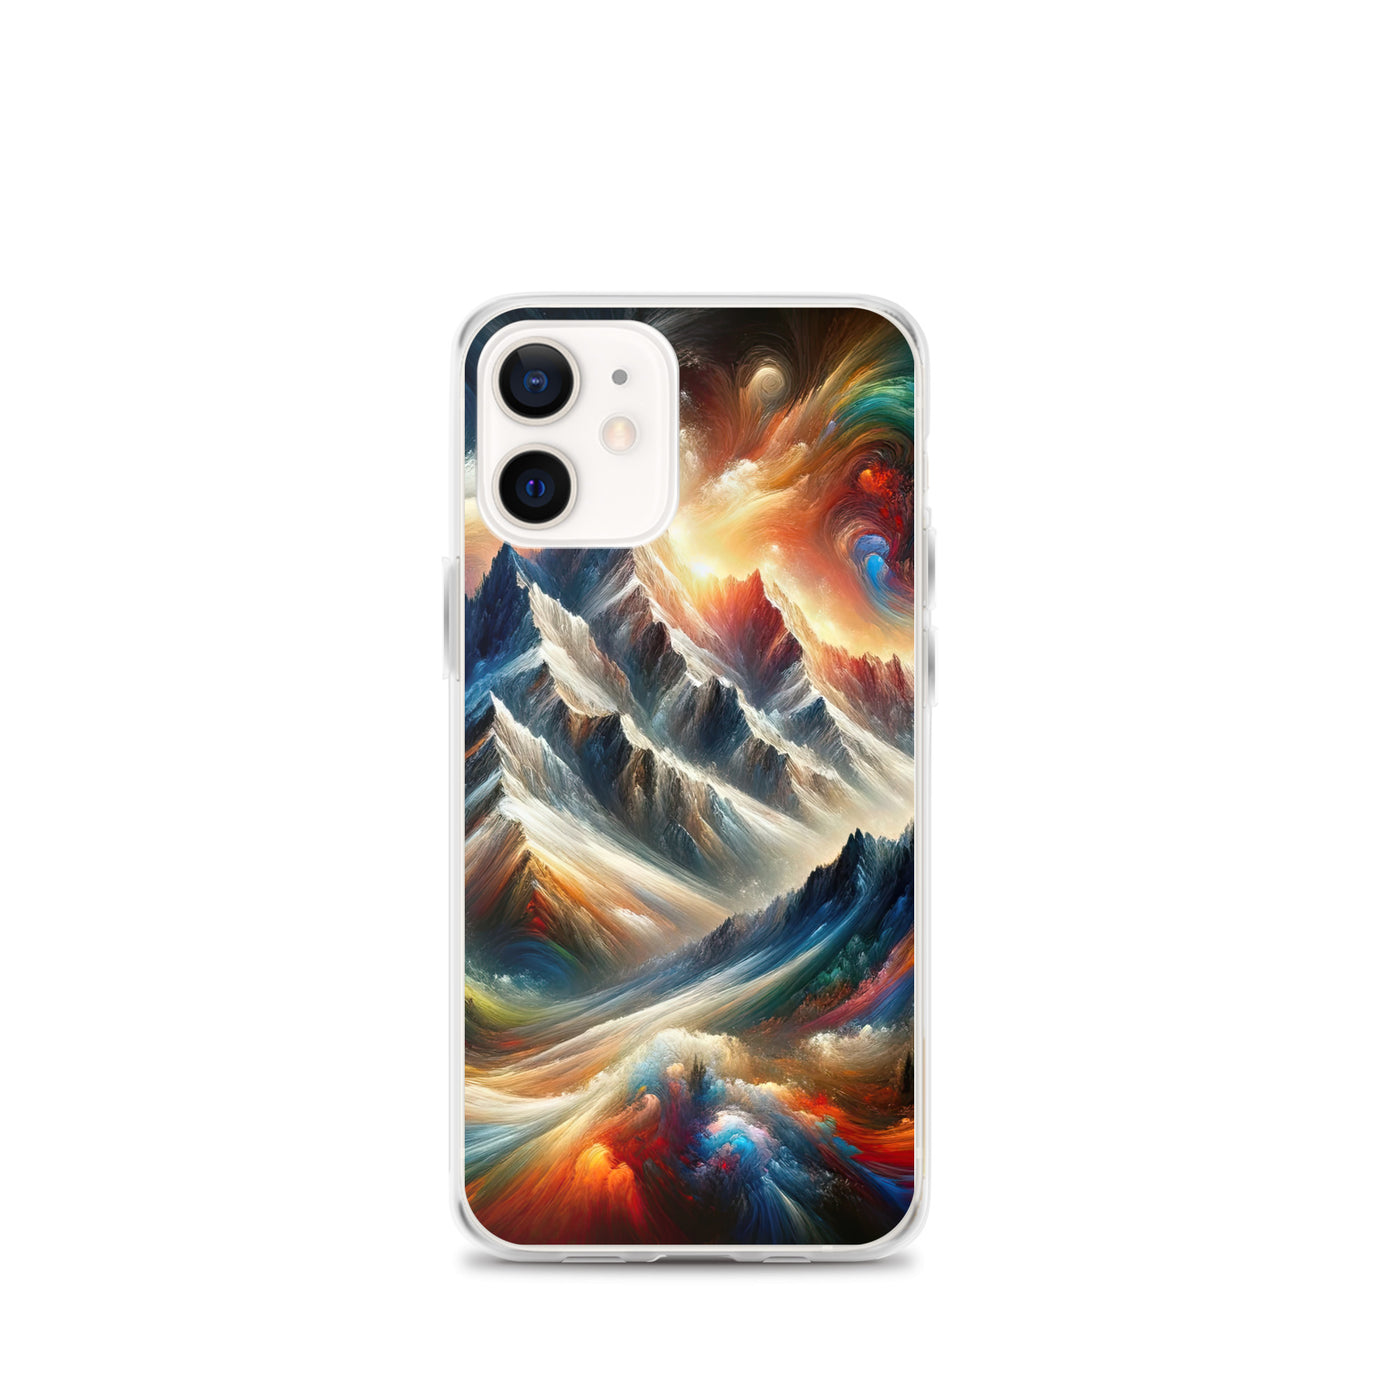 Expressionistische Alpen, Berge: Gemälde mit Farbexplosion - iPhone Schutzhülle (durchsichtig) berge xxx yyy zzz iPhone 12 mini